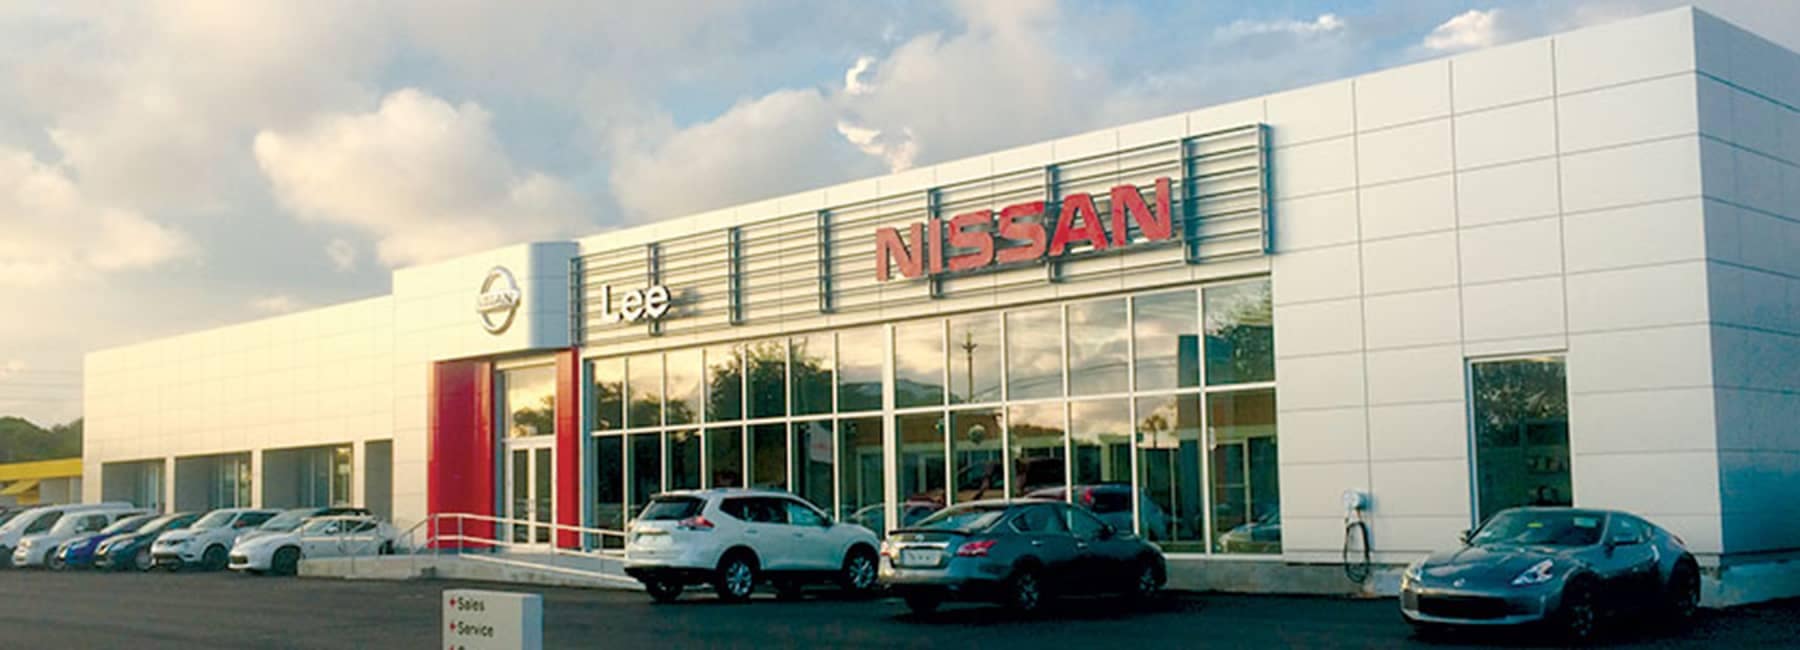 Lee Nissan dealership front